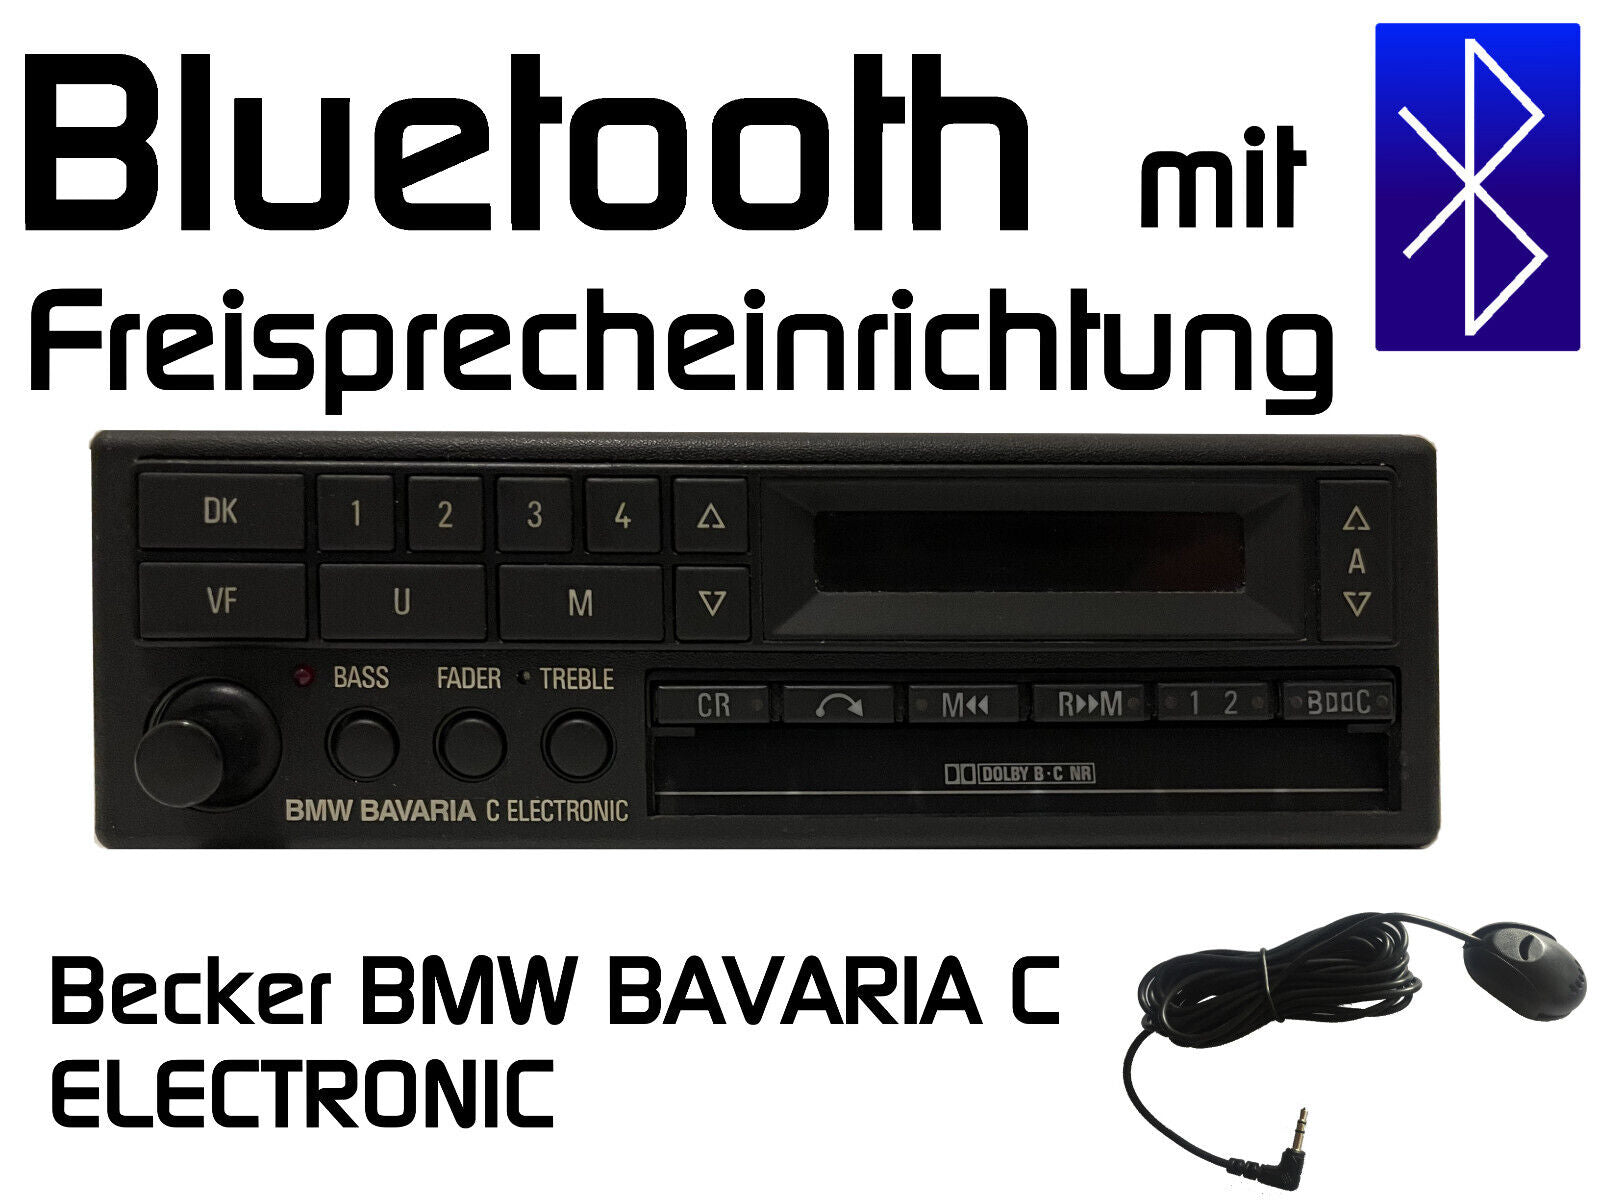 Becker BE728/729 Bluetooth mit Freisprecheinrichtung nachrüsten